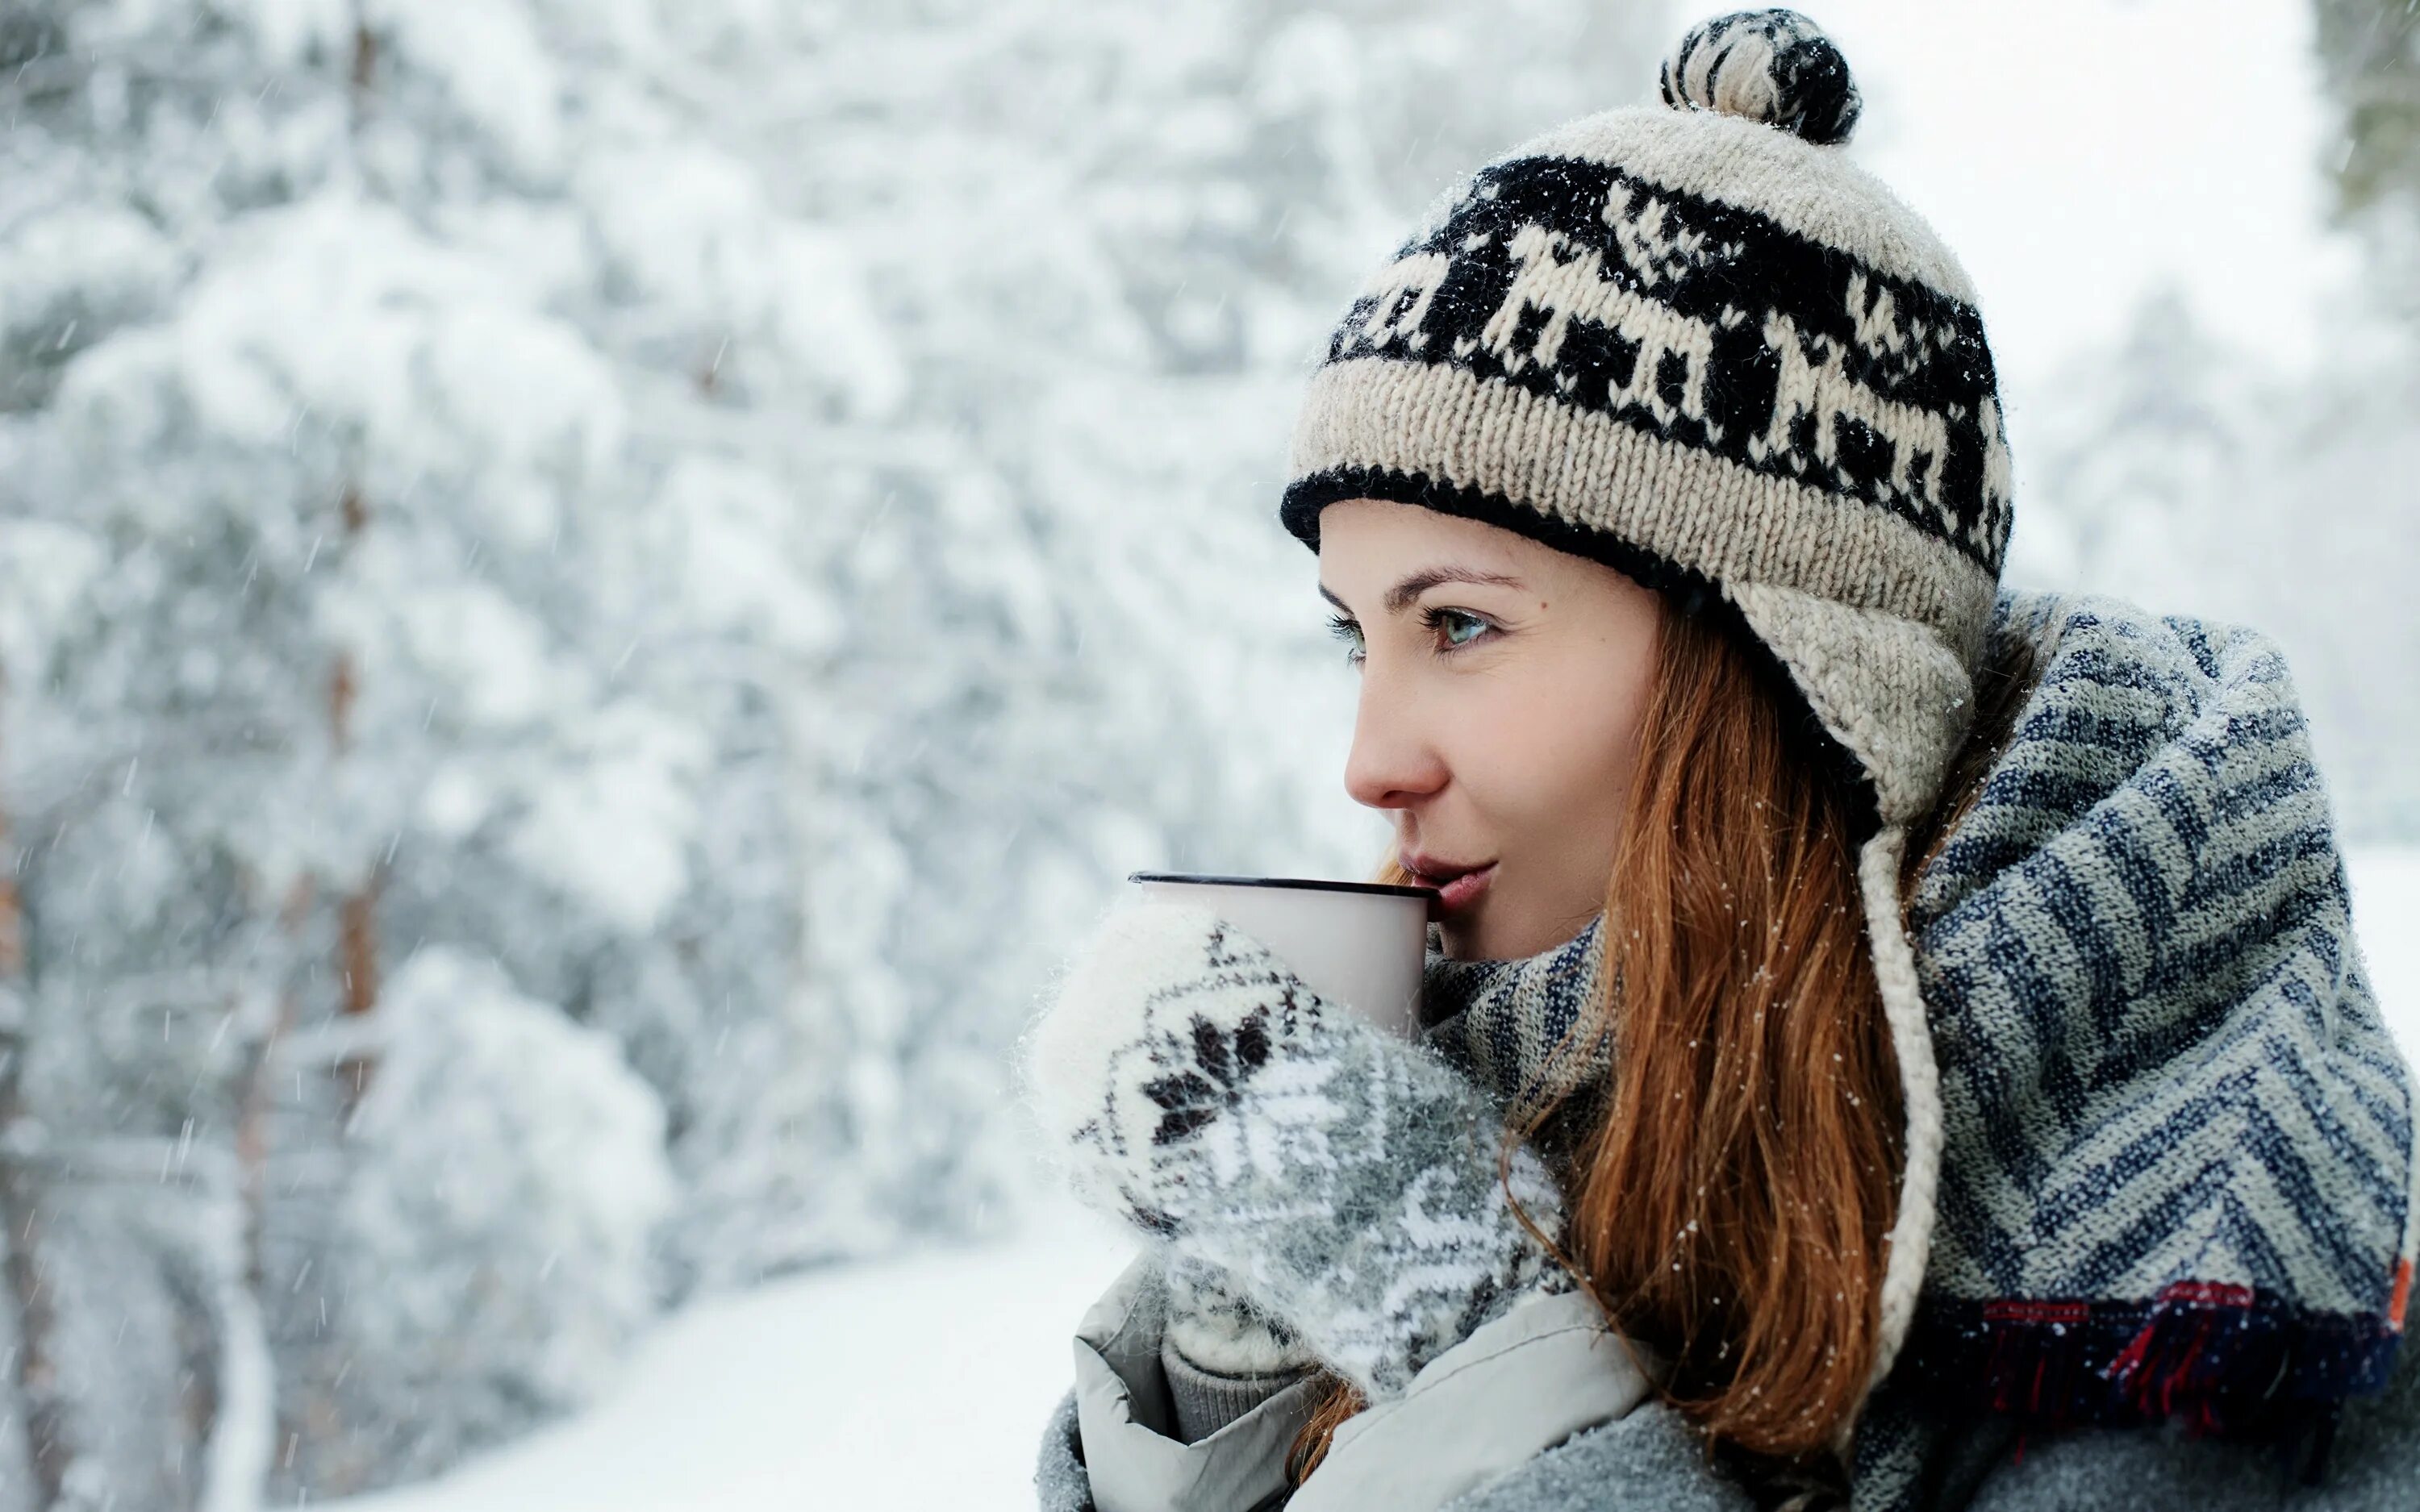 Было также холодно. Зимняя фотосессия в лесу. Девушка в шапке. Девушка пьет чай зимой. Девушка в шапке зимой.